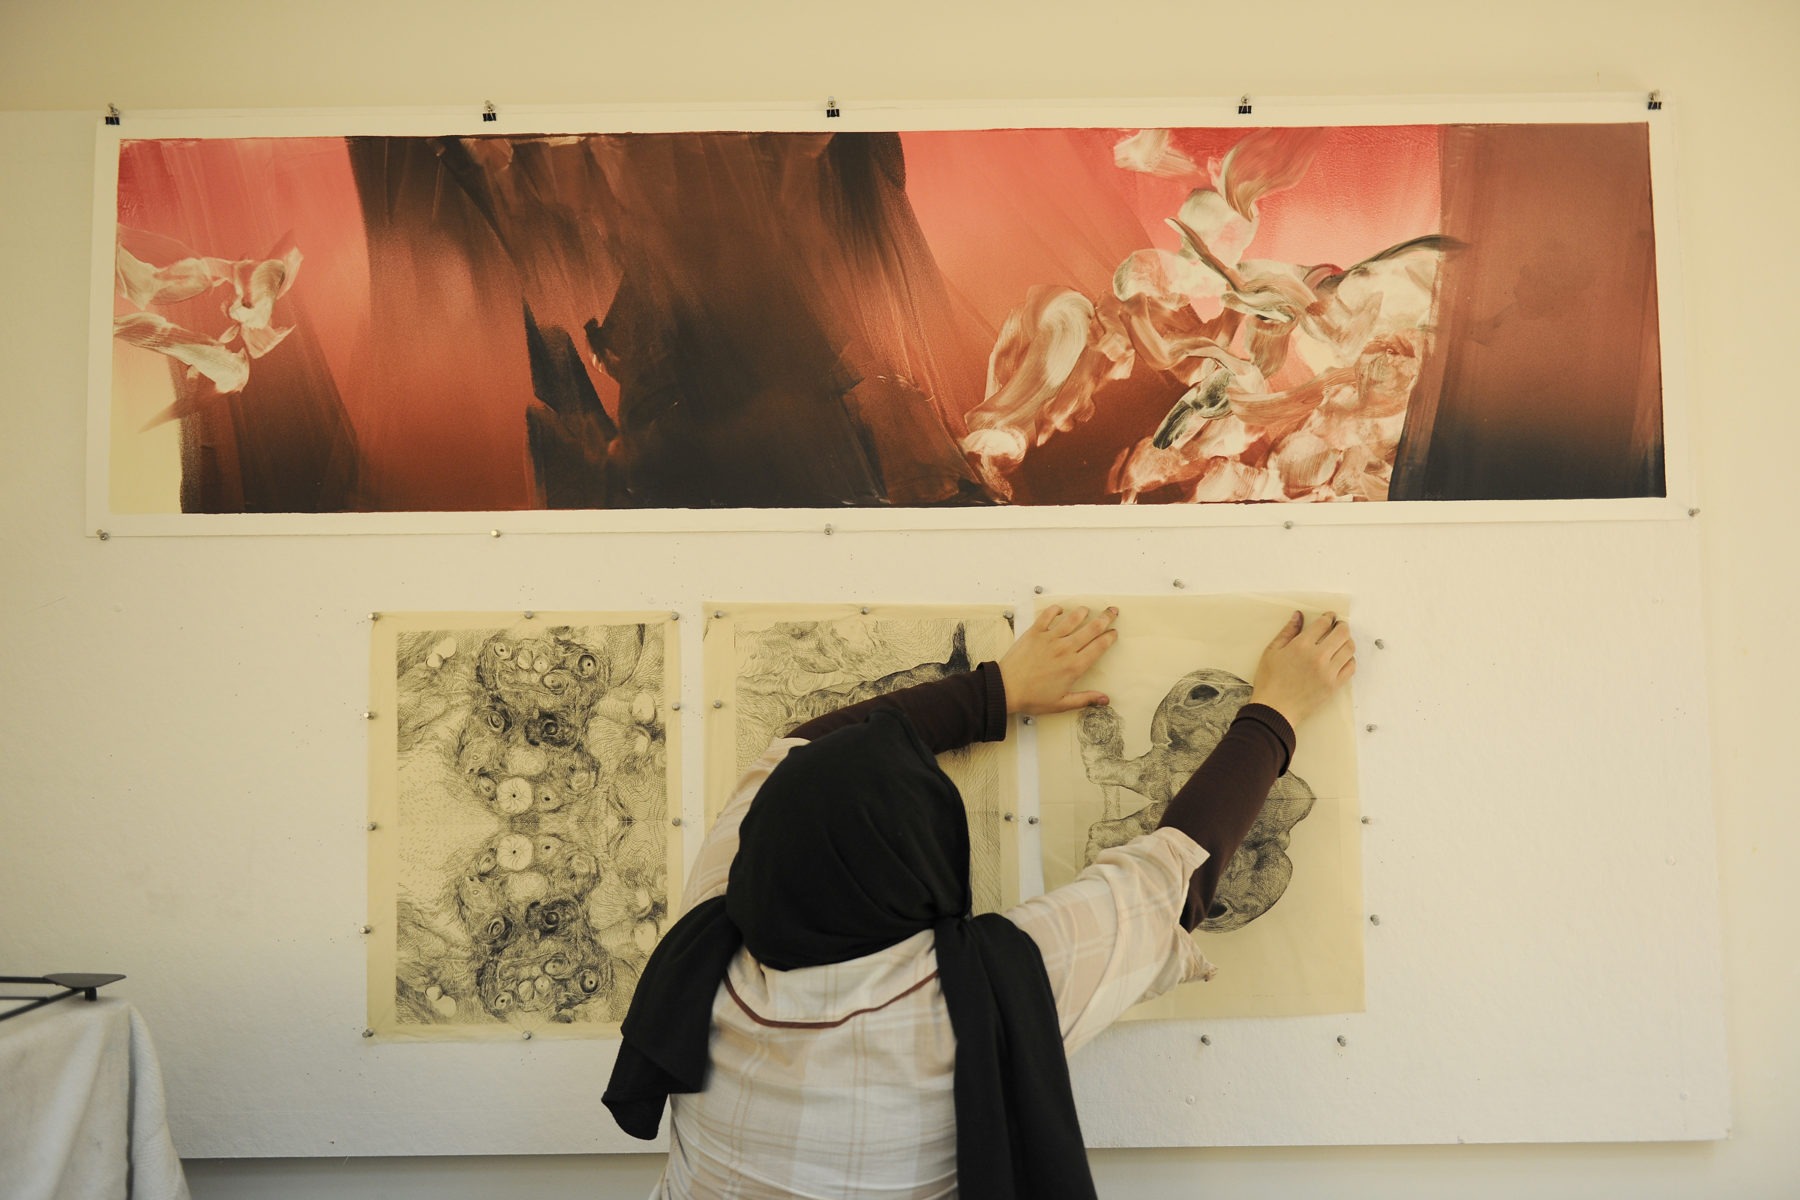 فنون: مقدمة المدير  The Gallery at VCUarts Qatar